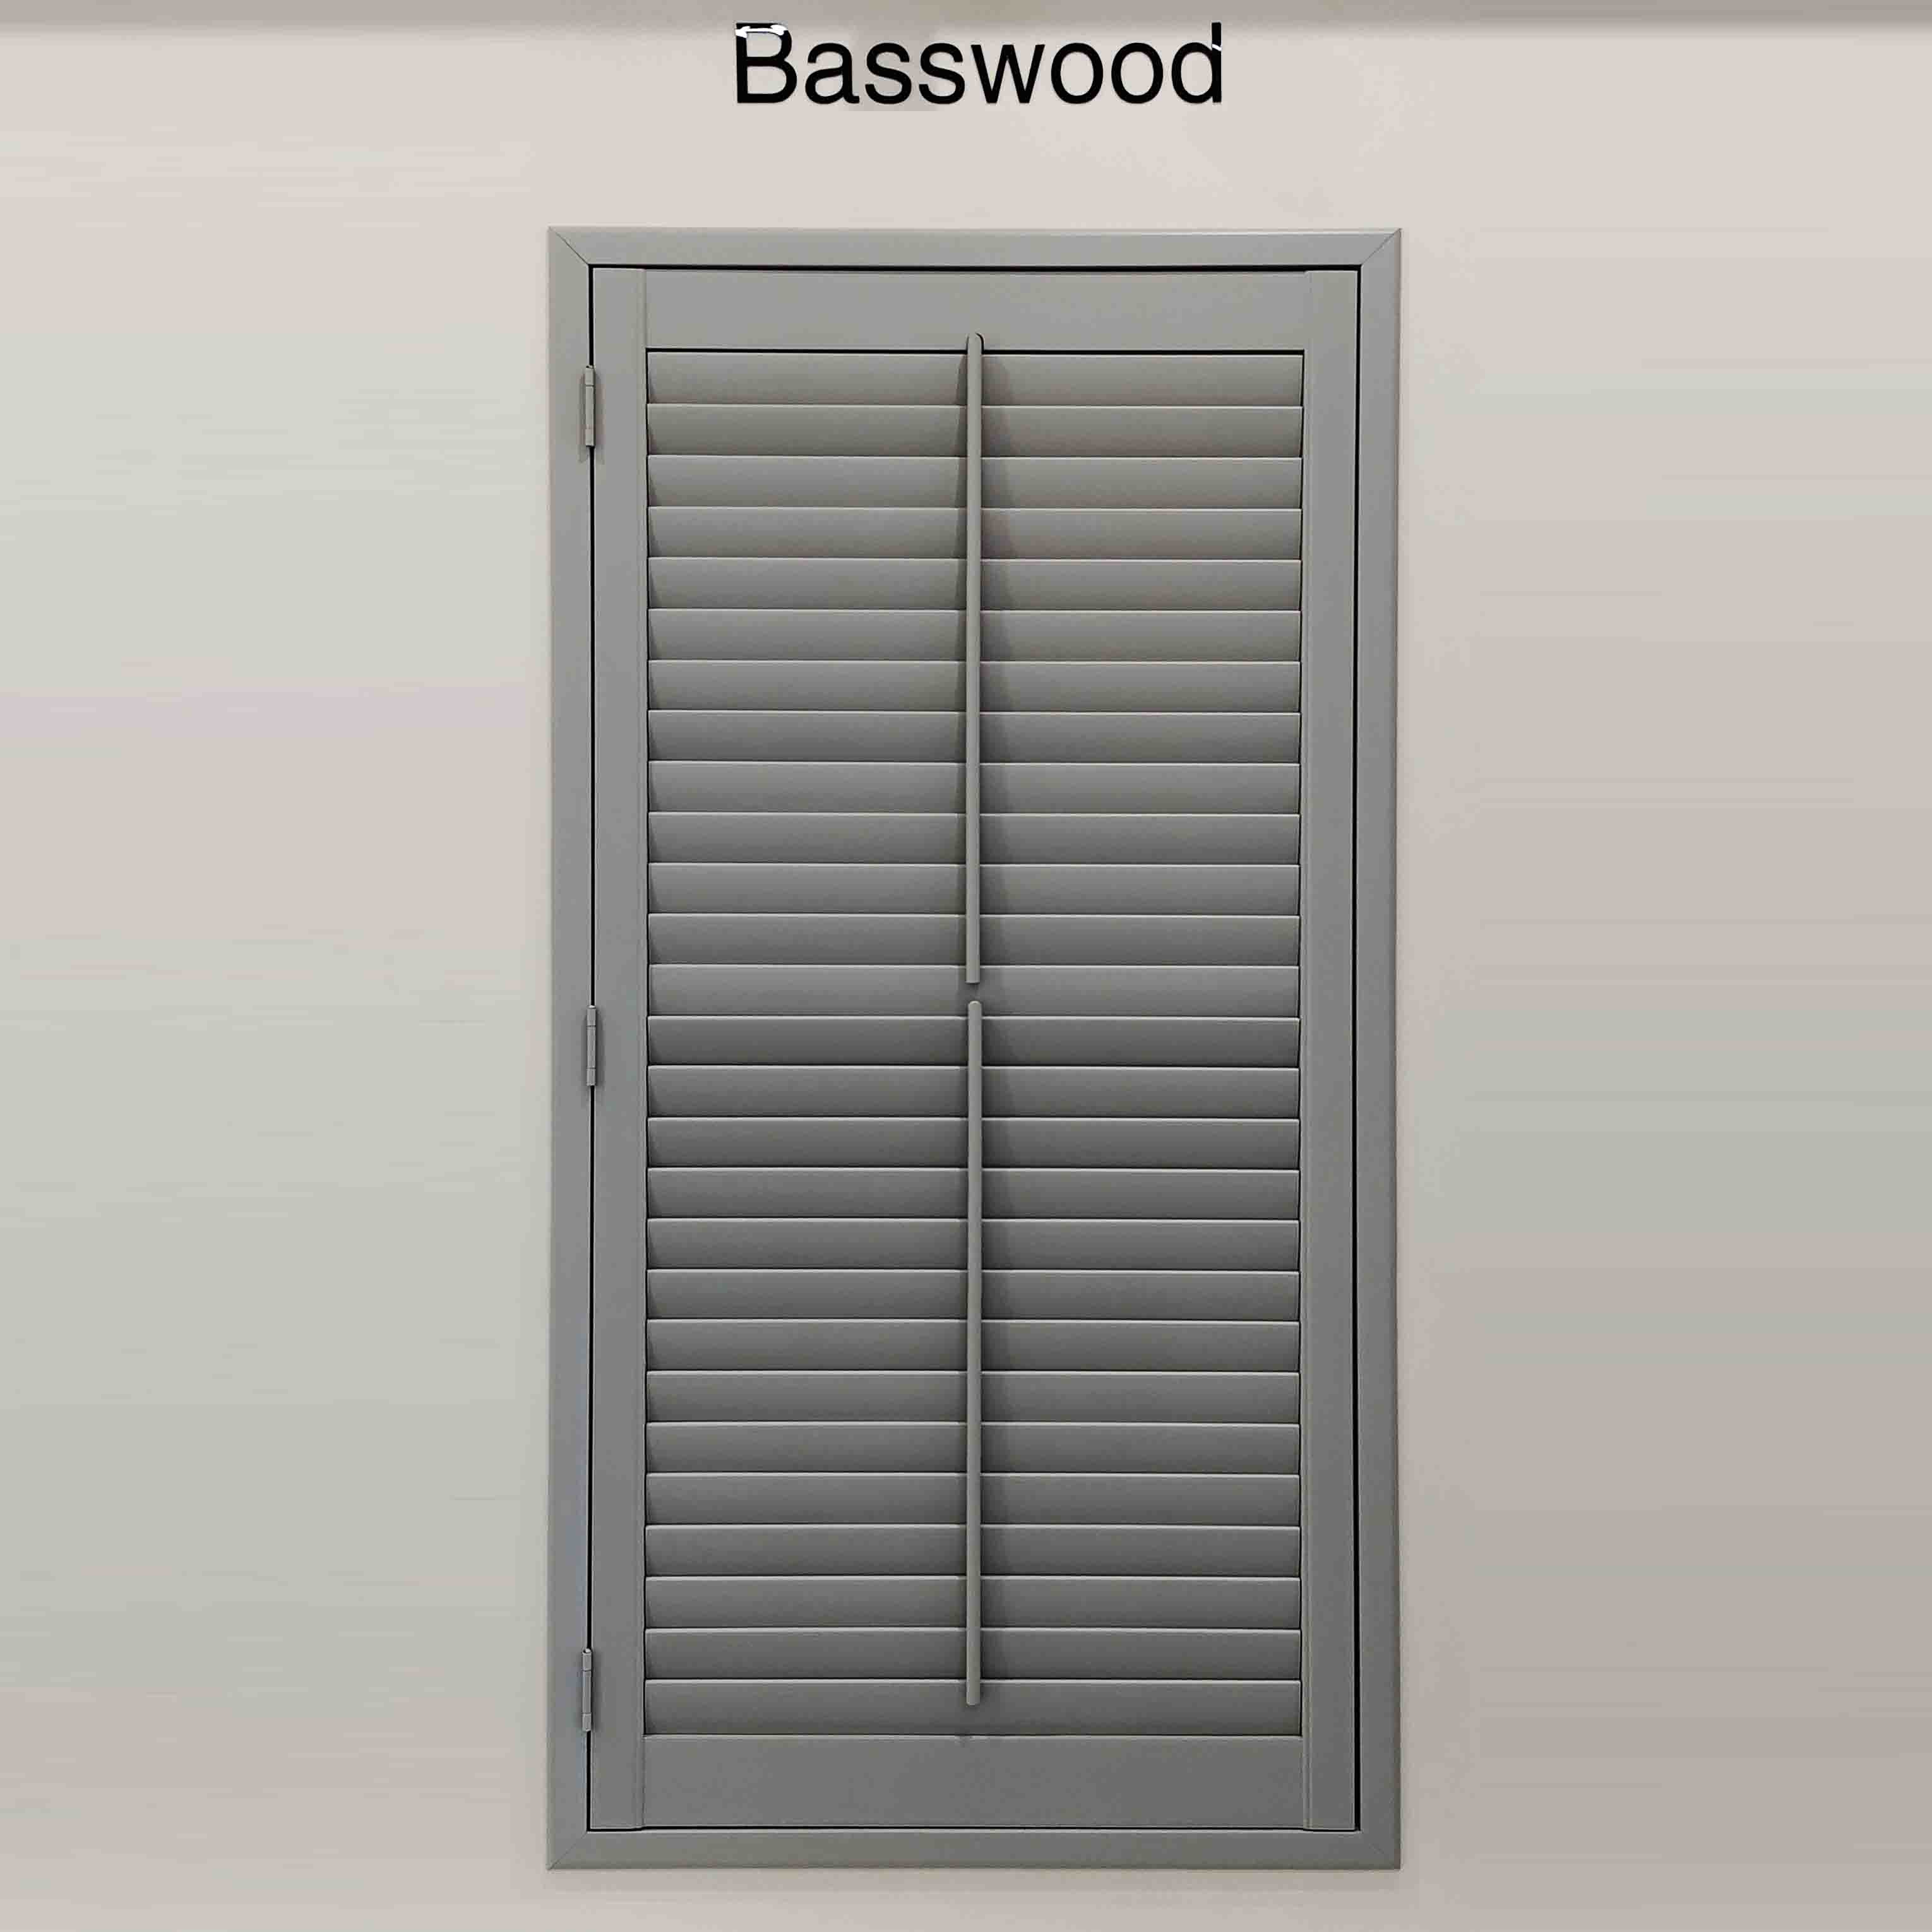 Basswood window shutter supplier,middle rod shutter